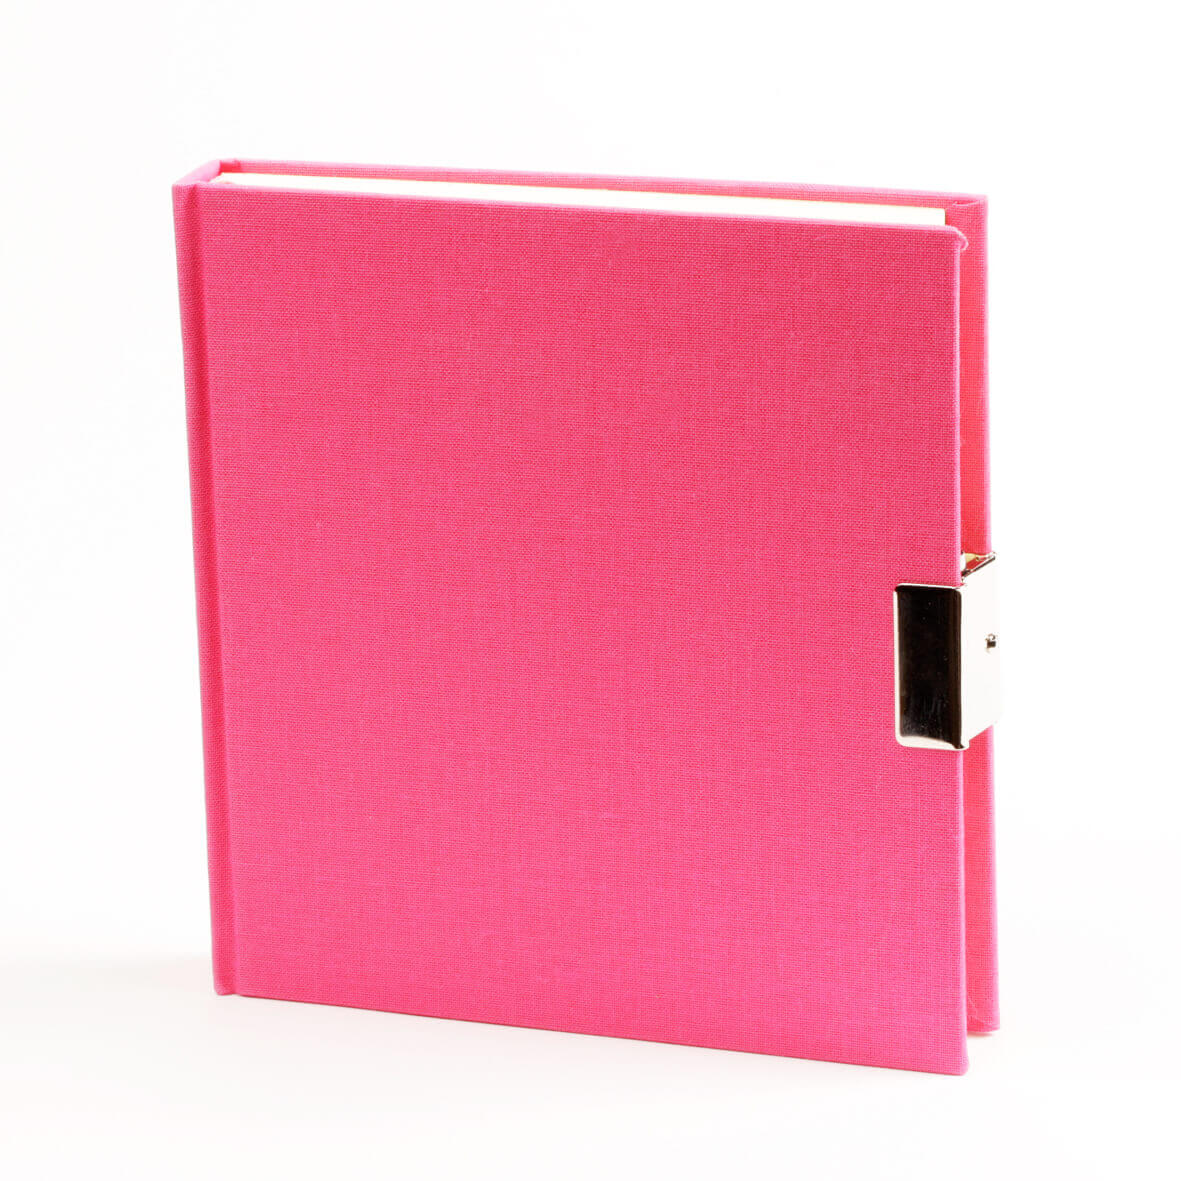 Bedenken intern dichters Dagboek met slot roze voor volwassenen | My Lovely Notebook